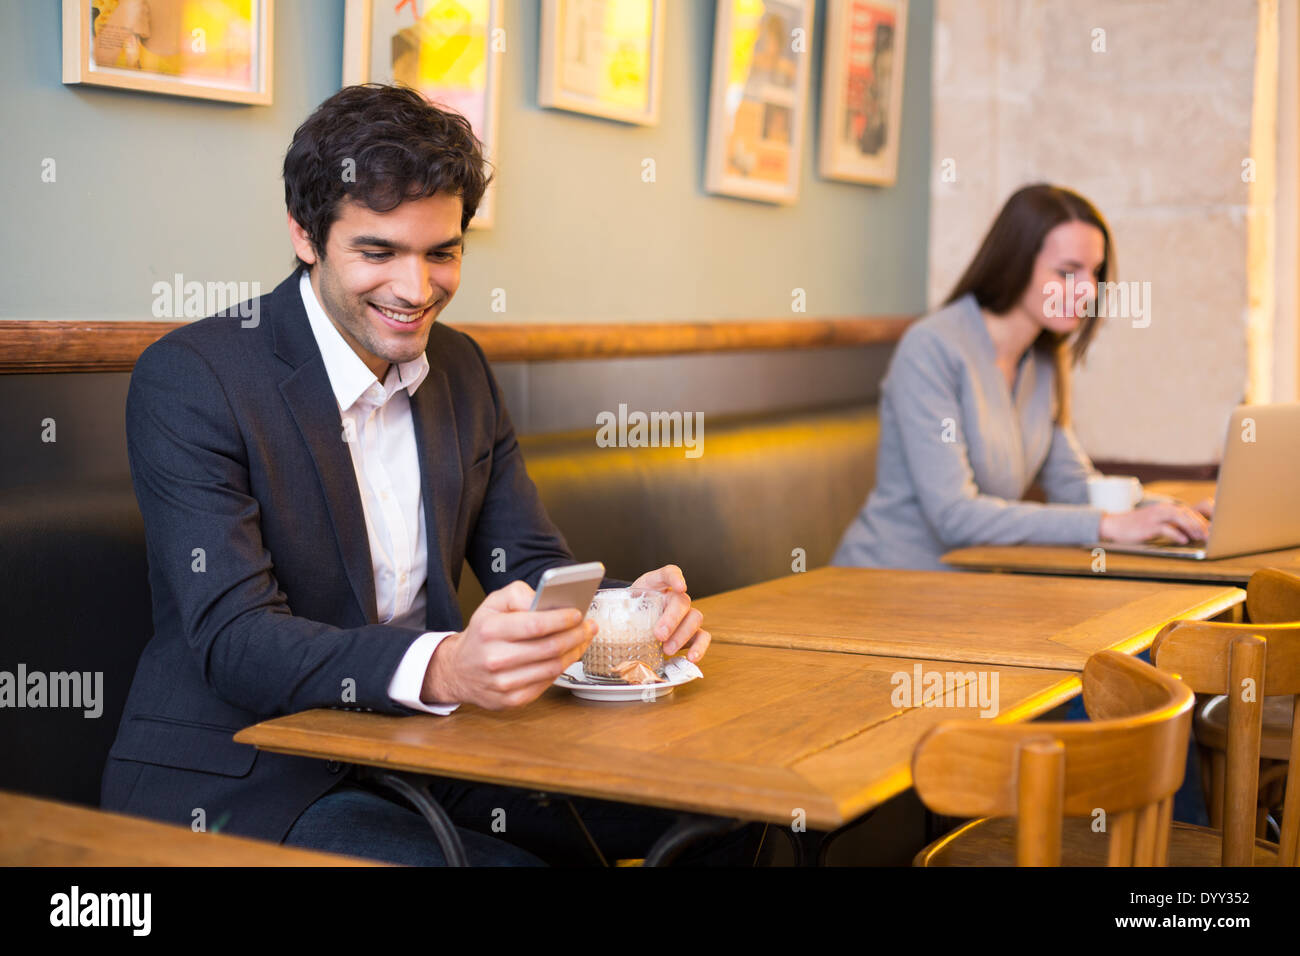 Maschio allegro ristorante cafe smartphone messaggi sms Foto Stock